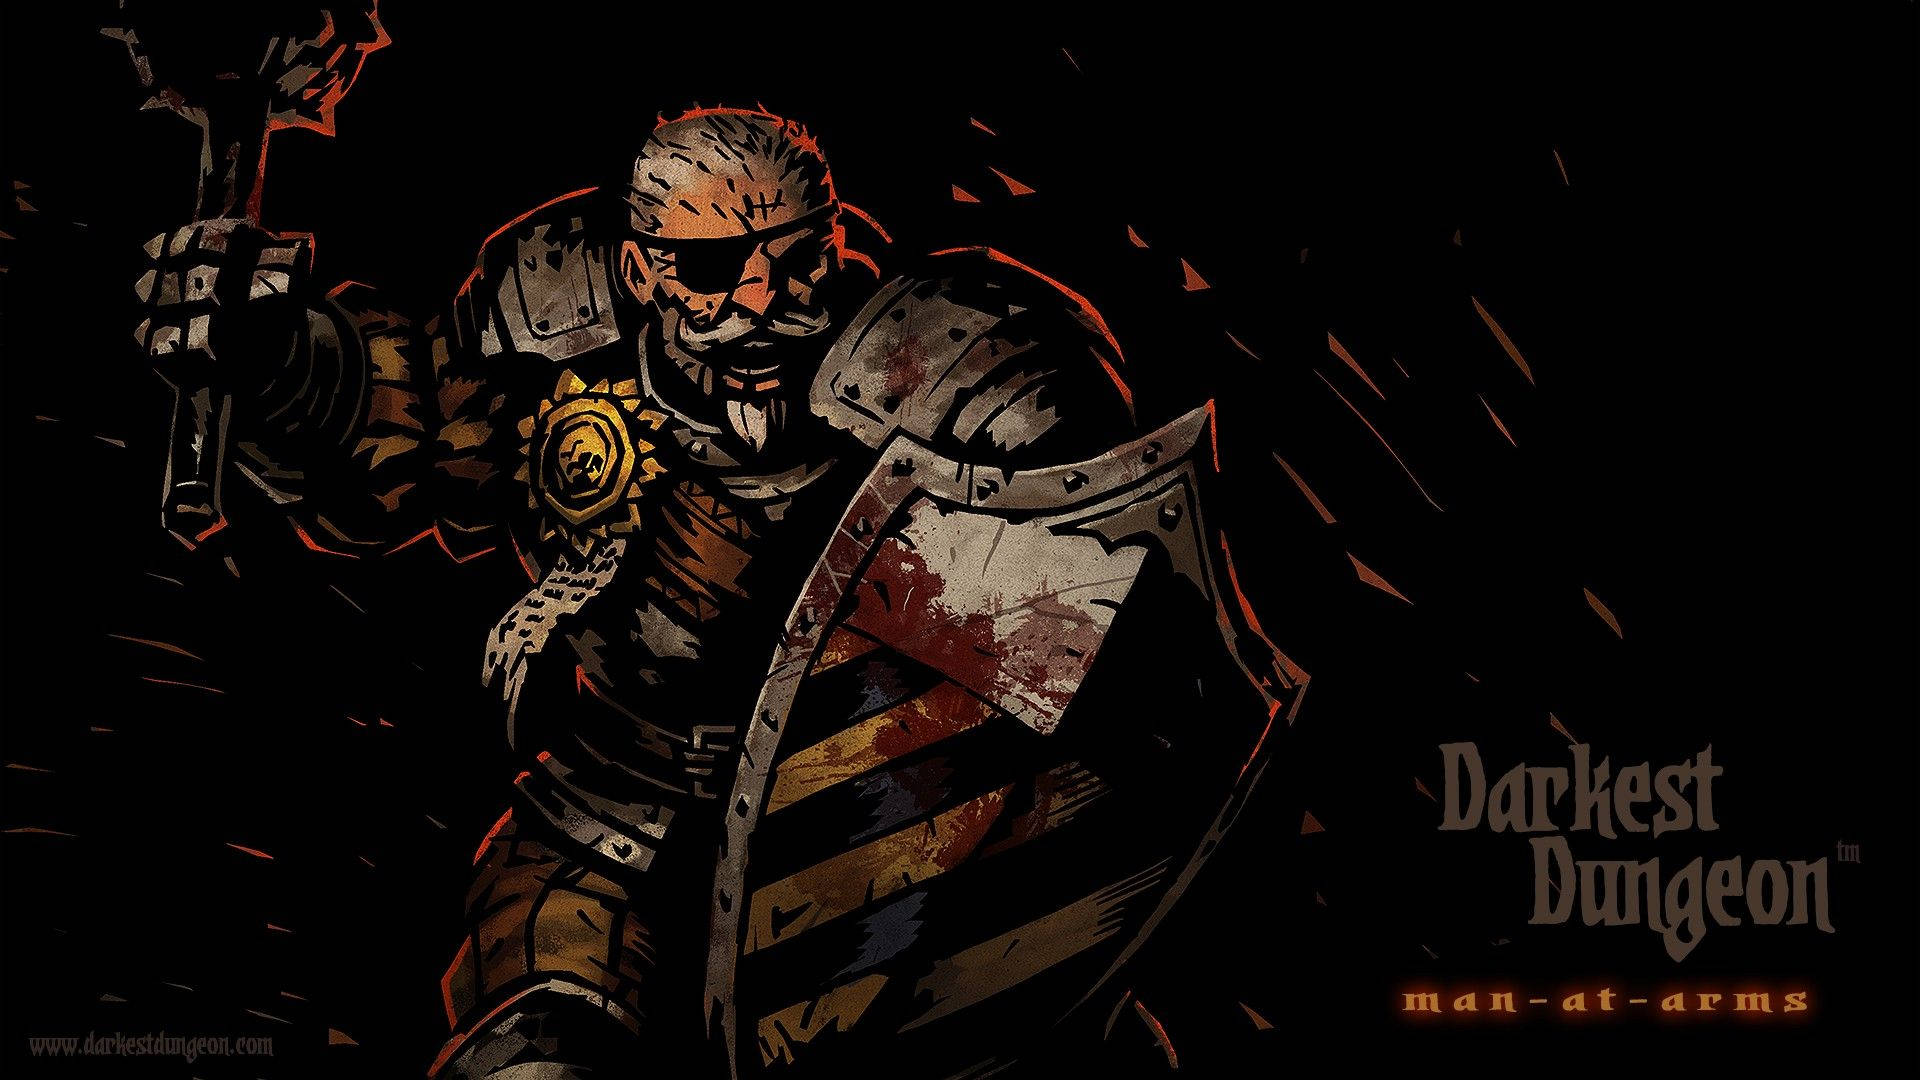 Man-at-arms Darkest Dungeon Wallpaper